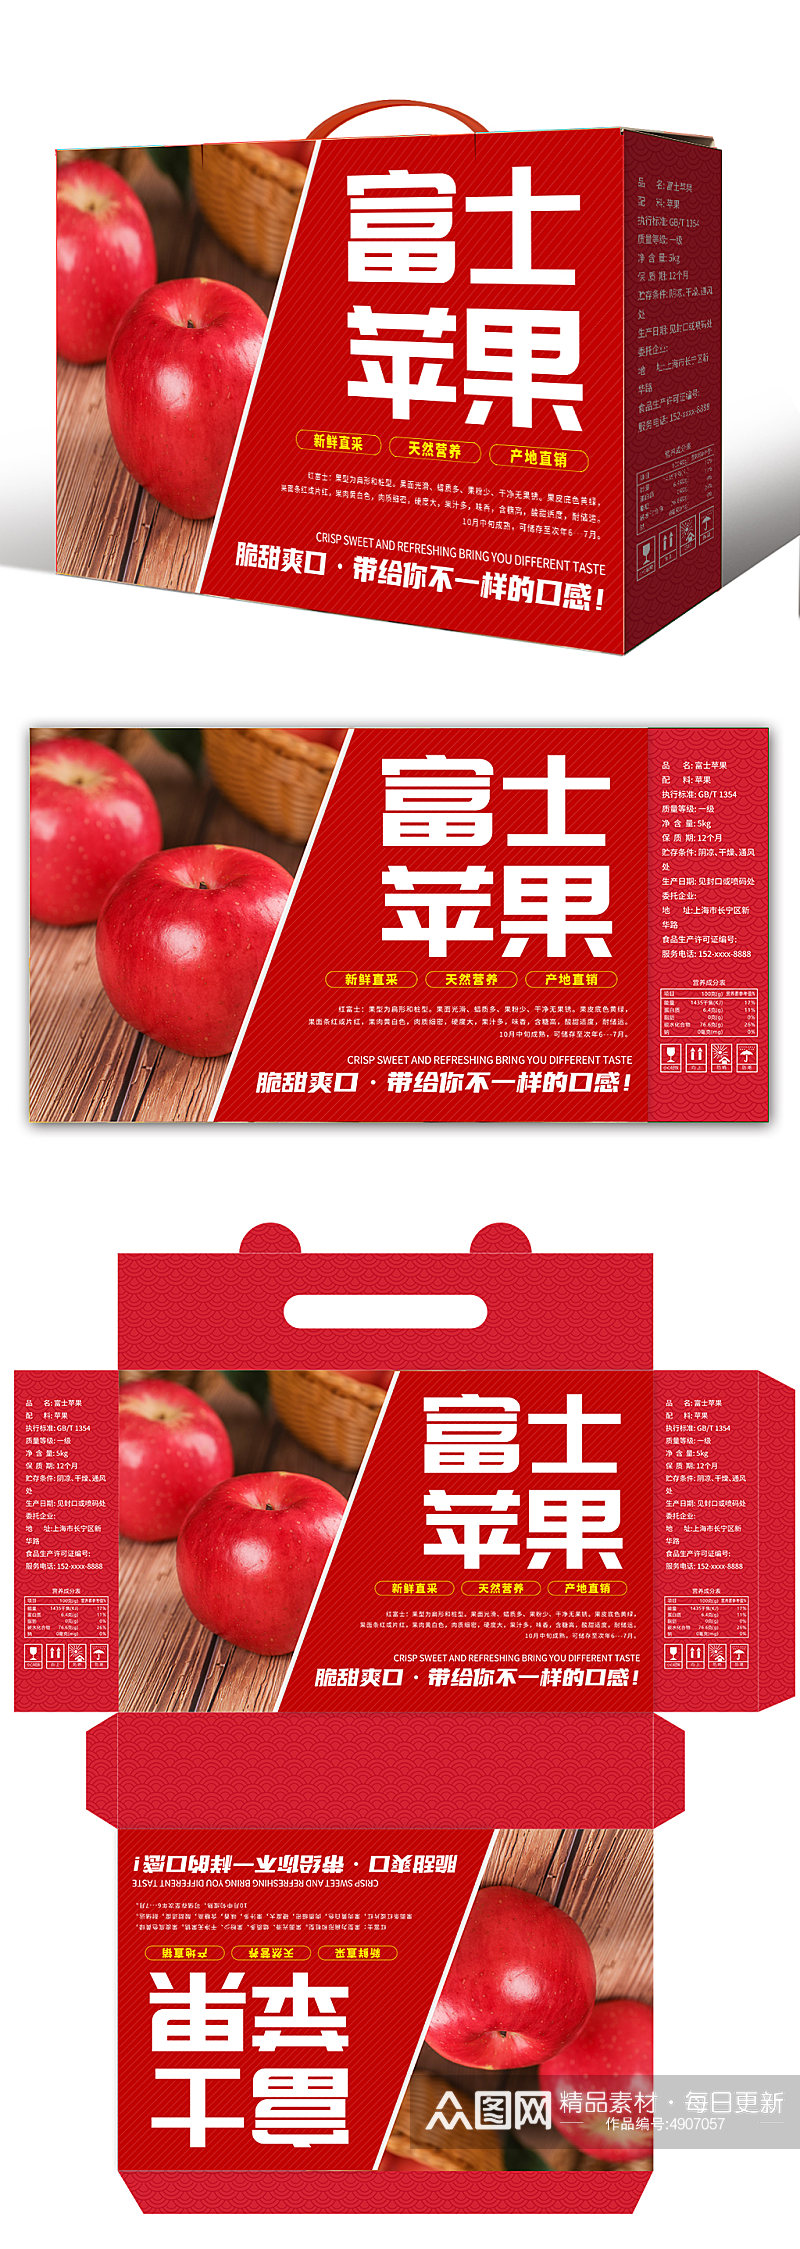 红色农产品苹果水果包装礼盒设计素材